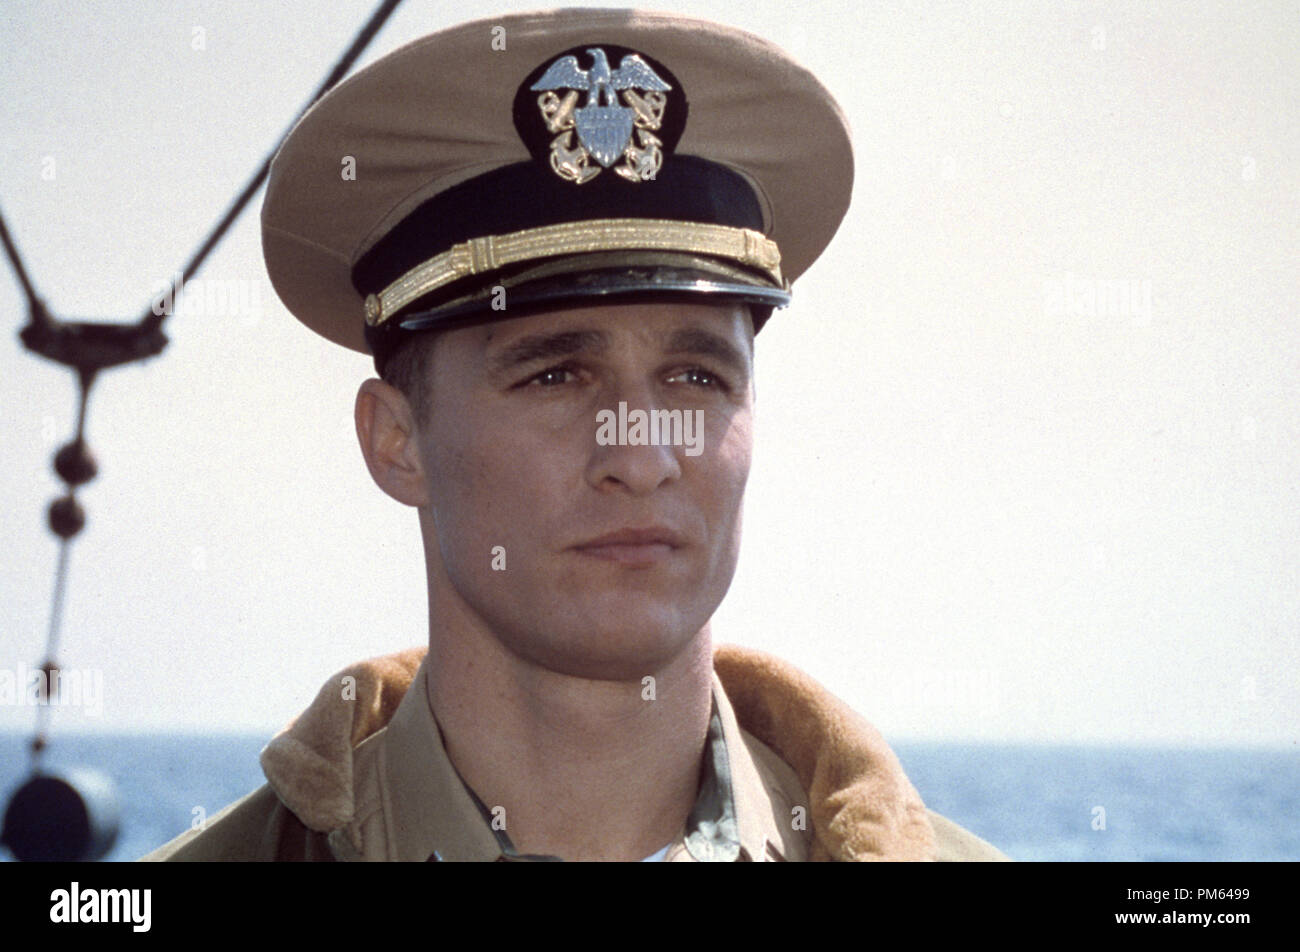 Film Still / Werbung Stills aus "U-571" Matthew McConaughey © 2000 Universal Pictures Photo Credit: Mario den Tursi Datei Referenz # 30846034 THA nur für redaktionelle Verwendung - Alle Rechte vorbehalten Stockfoto